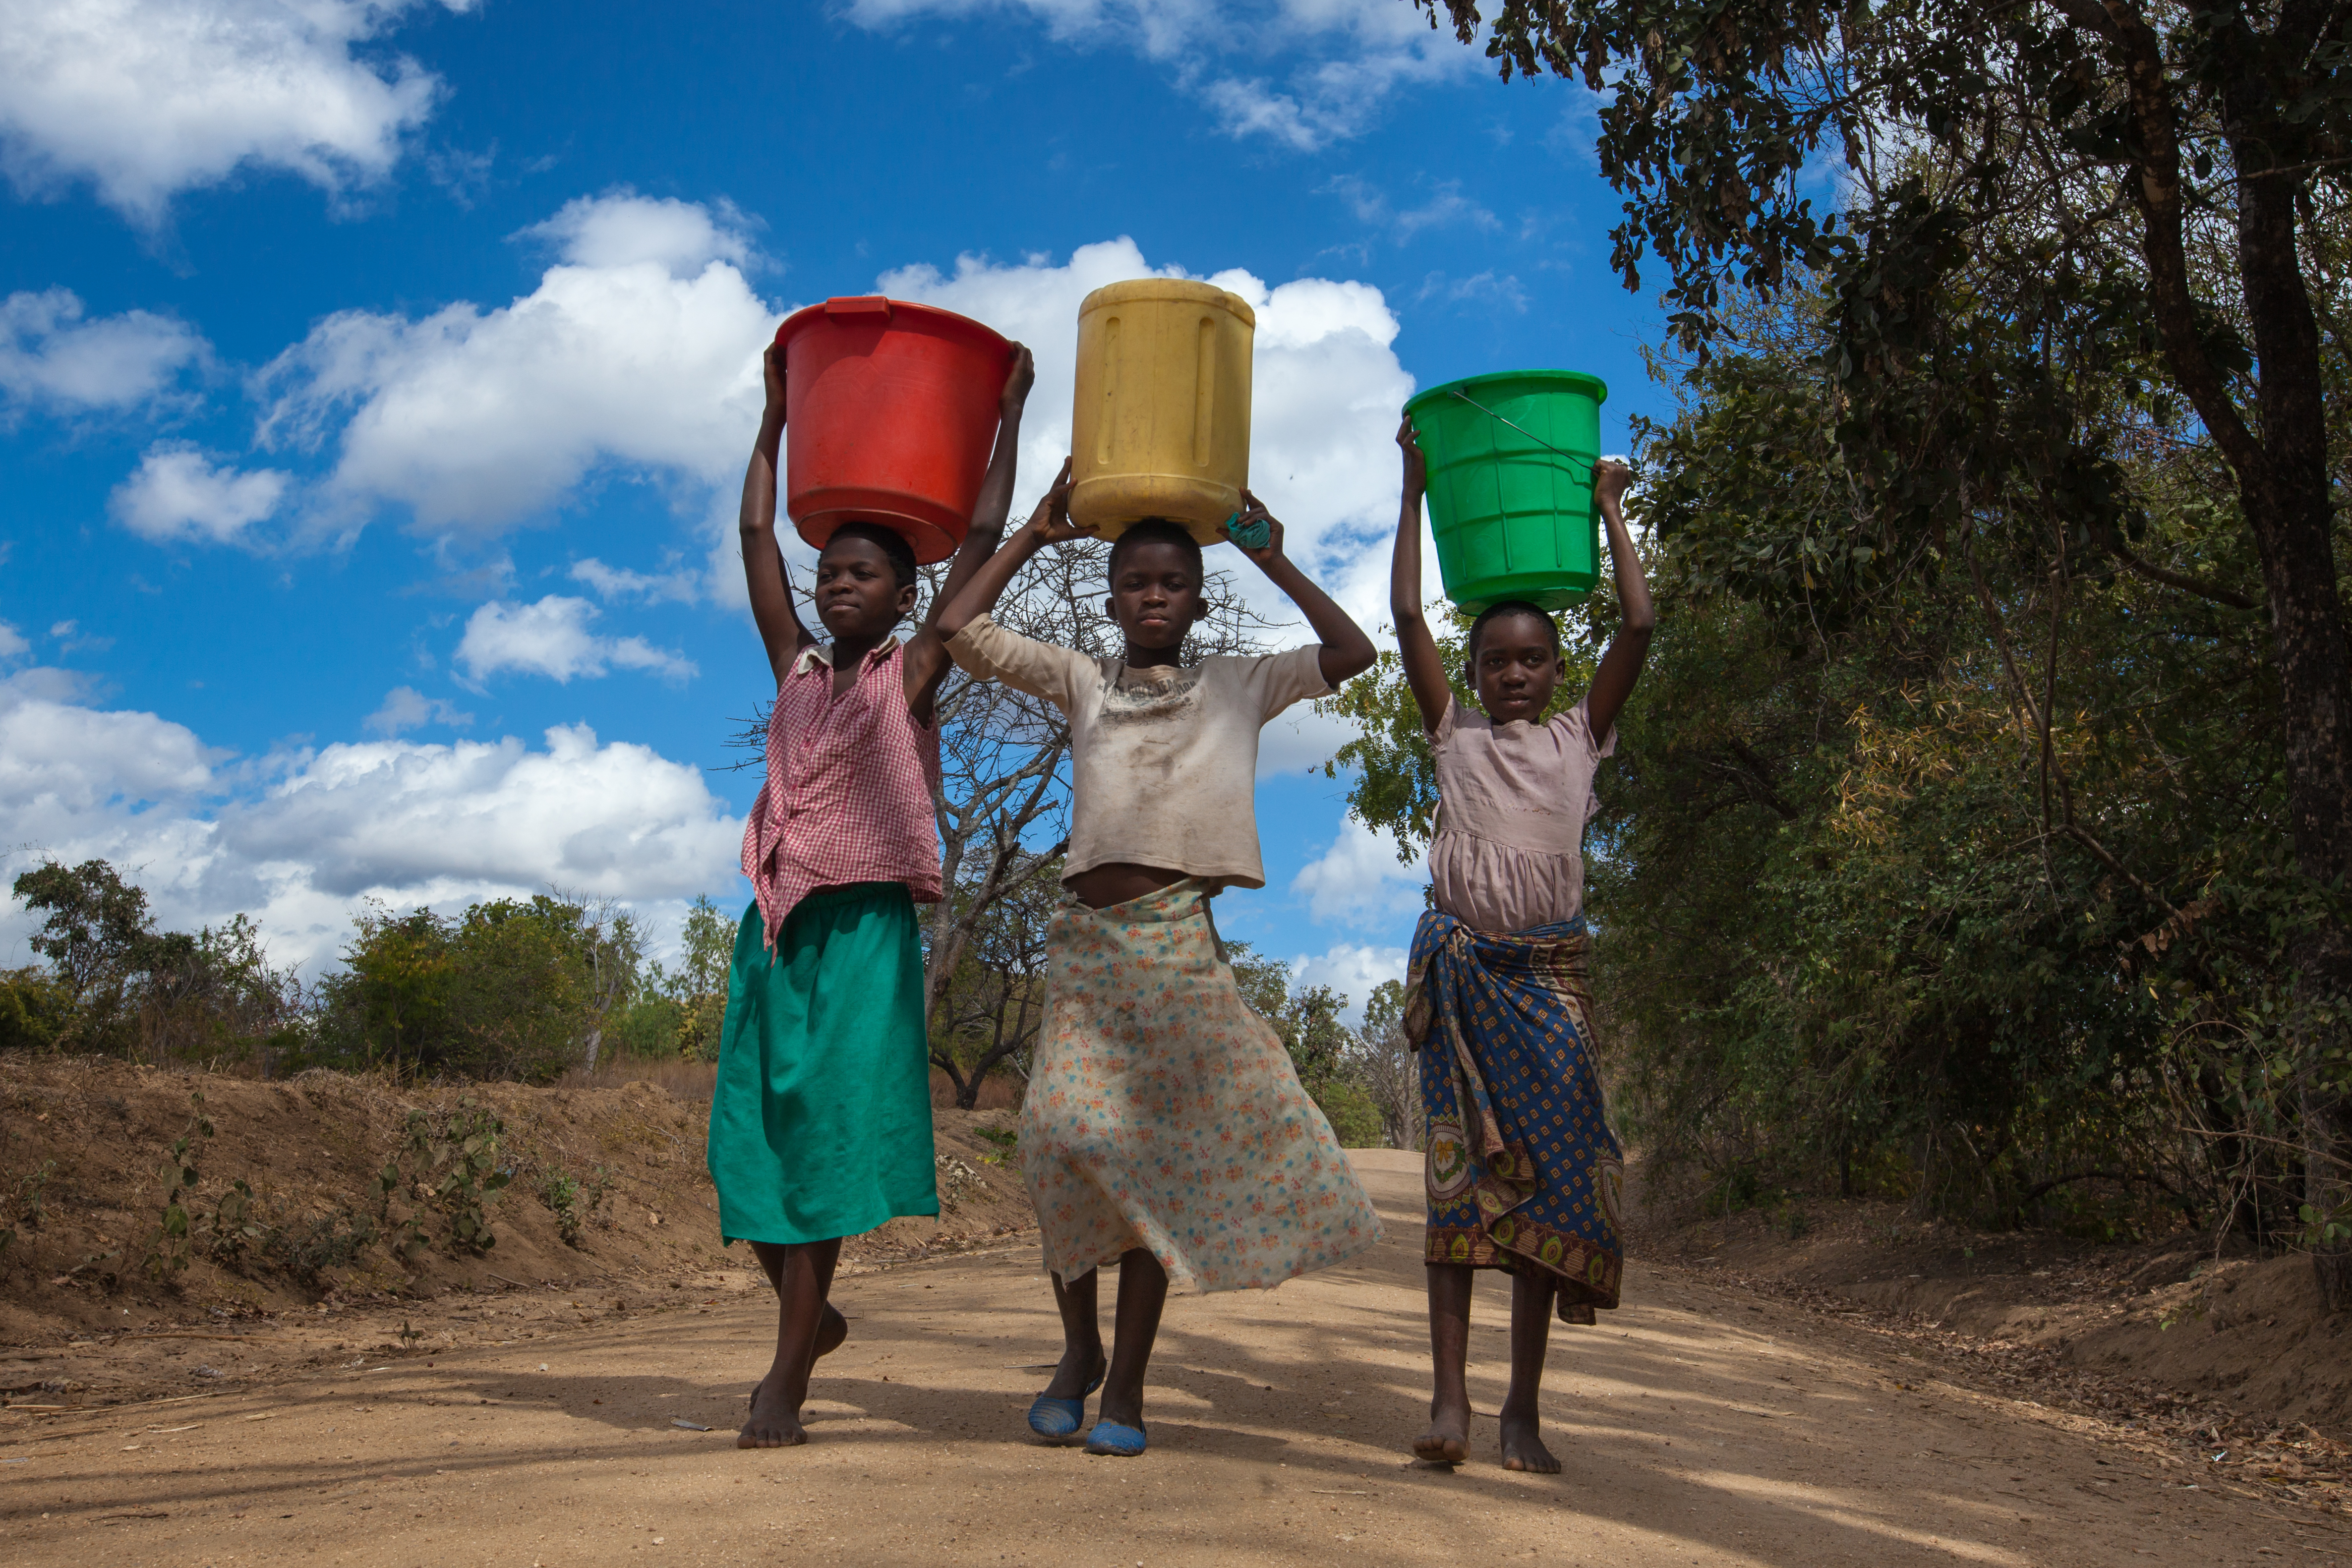 Tres adolescentes cargando cubos de agua de colores en un camino de tierra, regresando de su viaje al pozo más cercano, en el distrito de Balaka, en el sur de Malawi, bajo un cielo azul con nubes